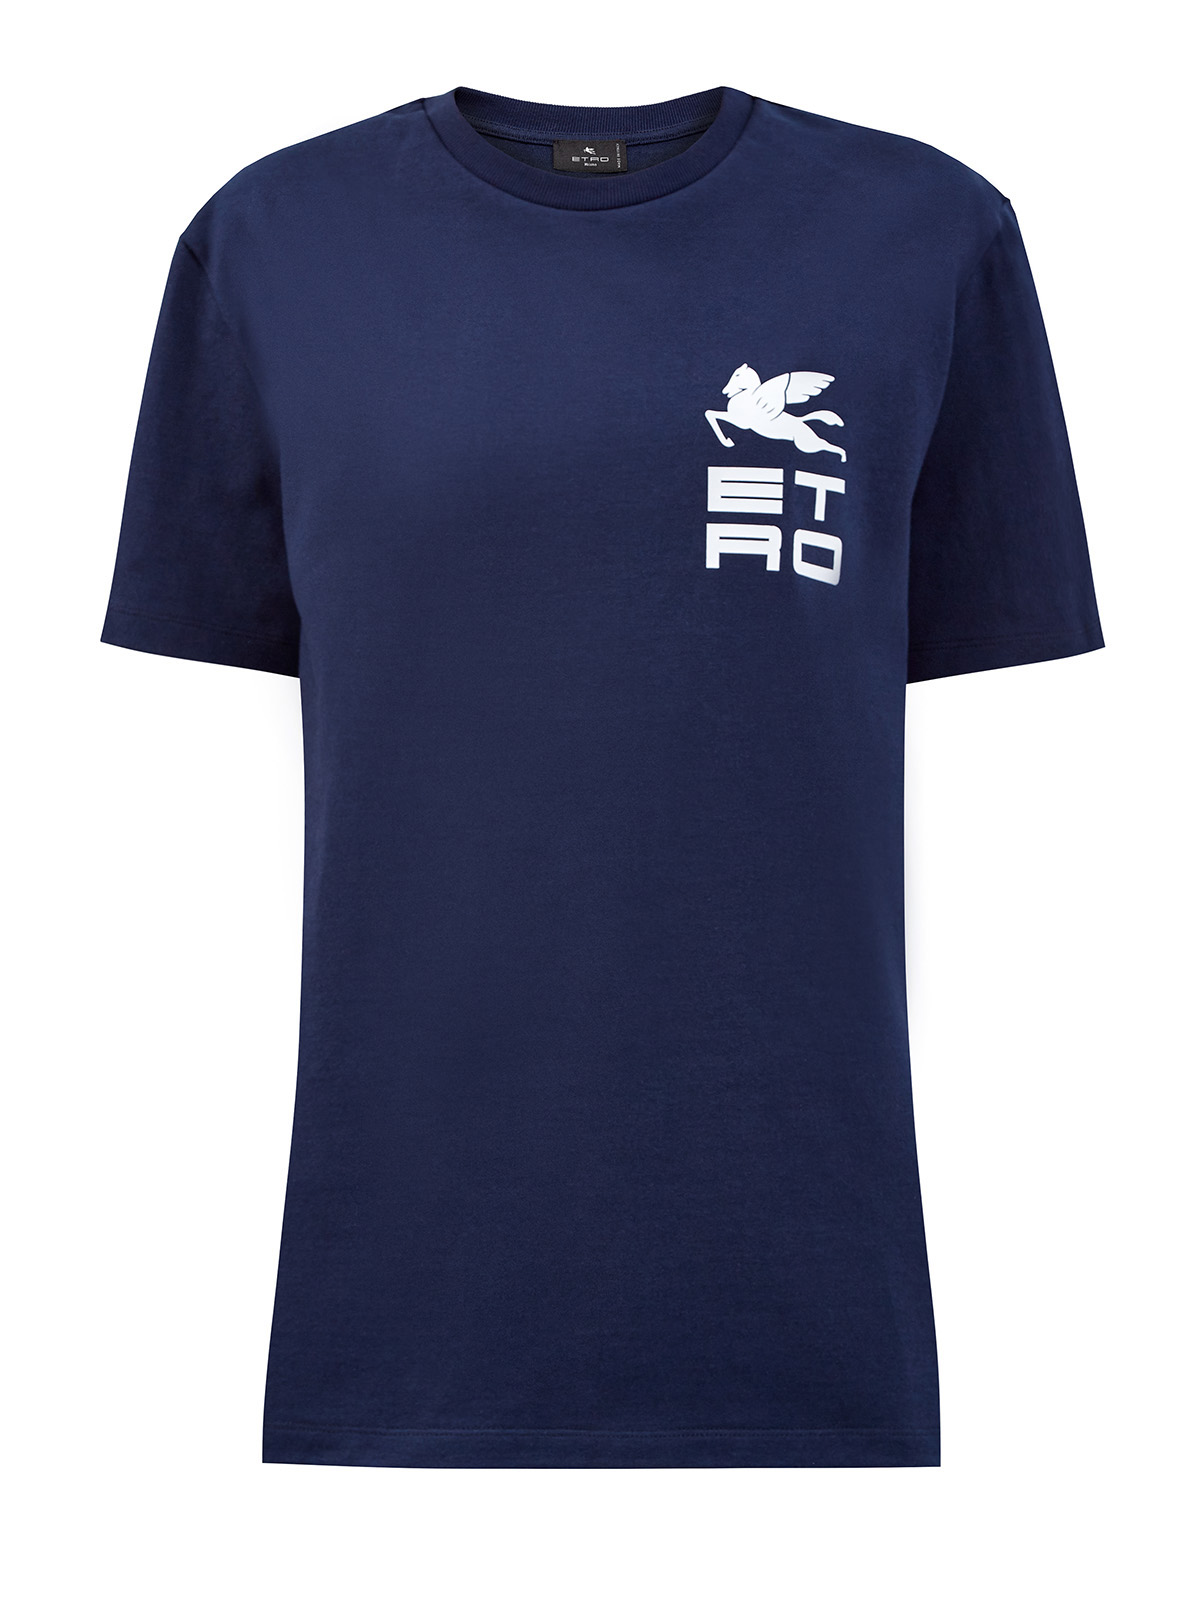 Свободная футболка из плотного хлопка джерси с принтом ETRO синего цвета